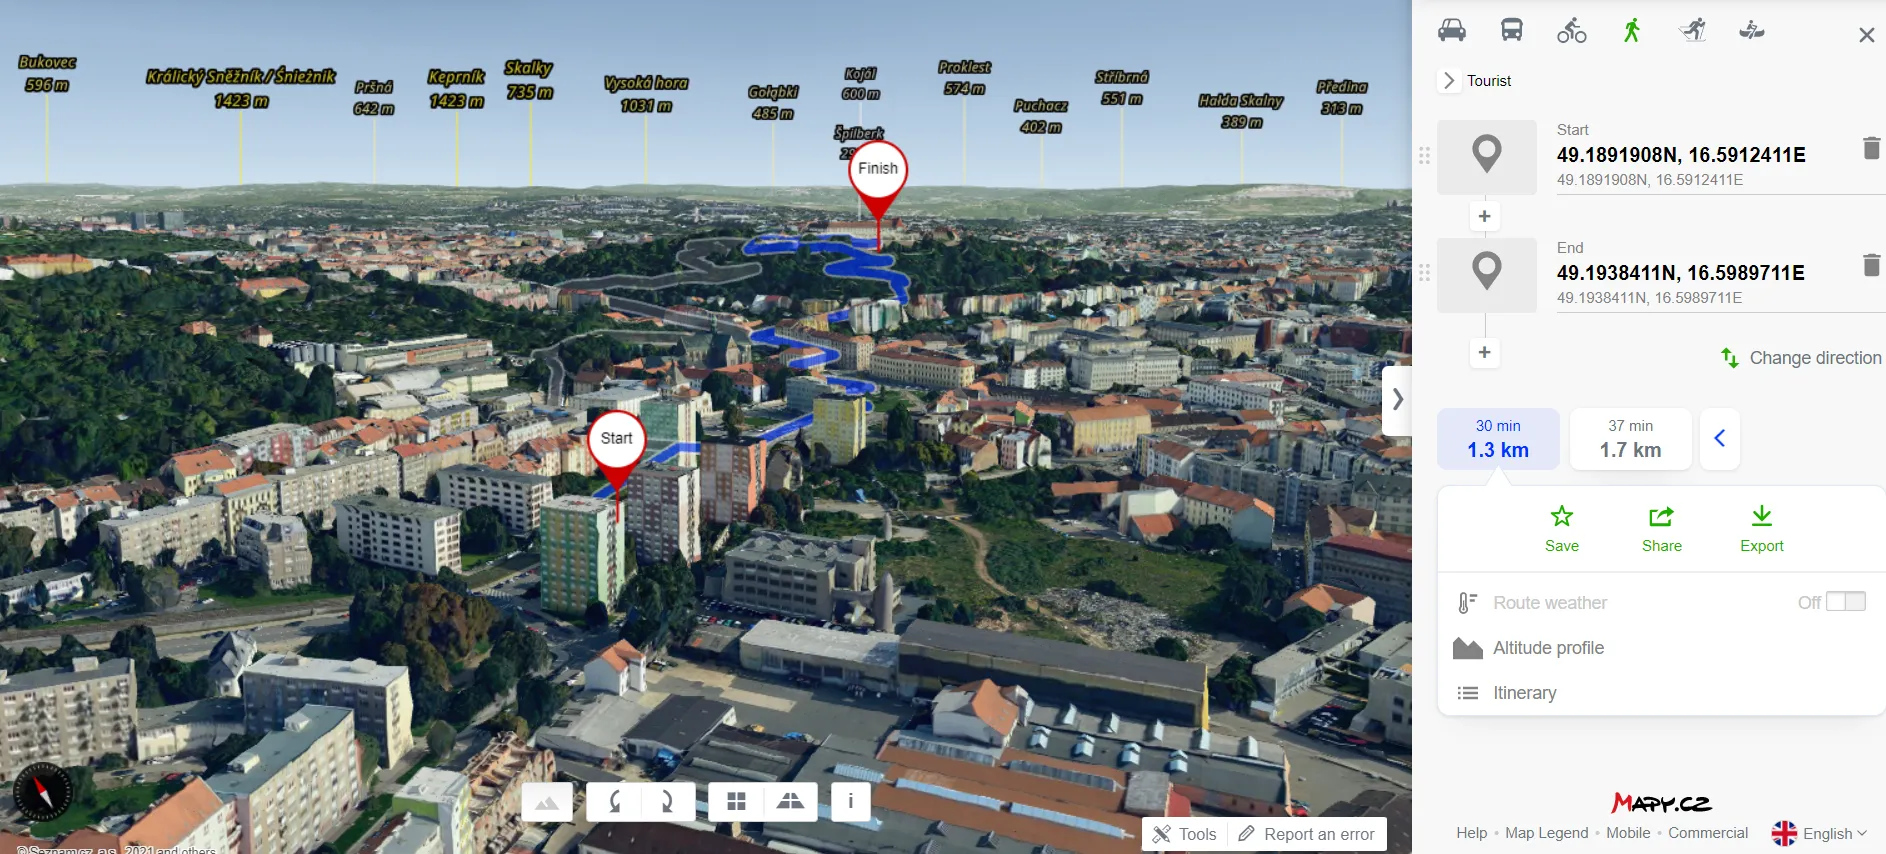 Mapy.cz 3D routes